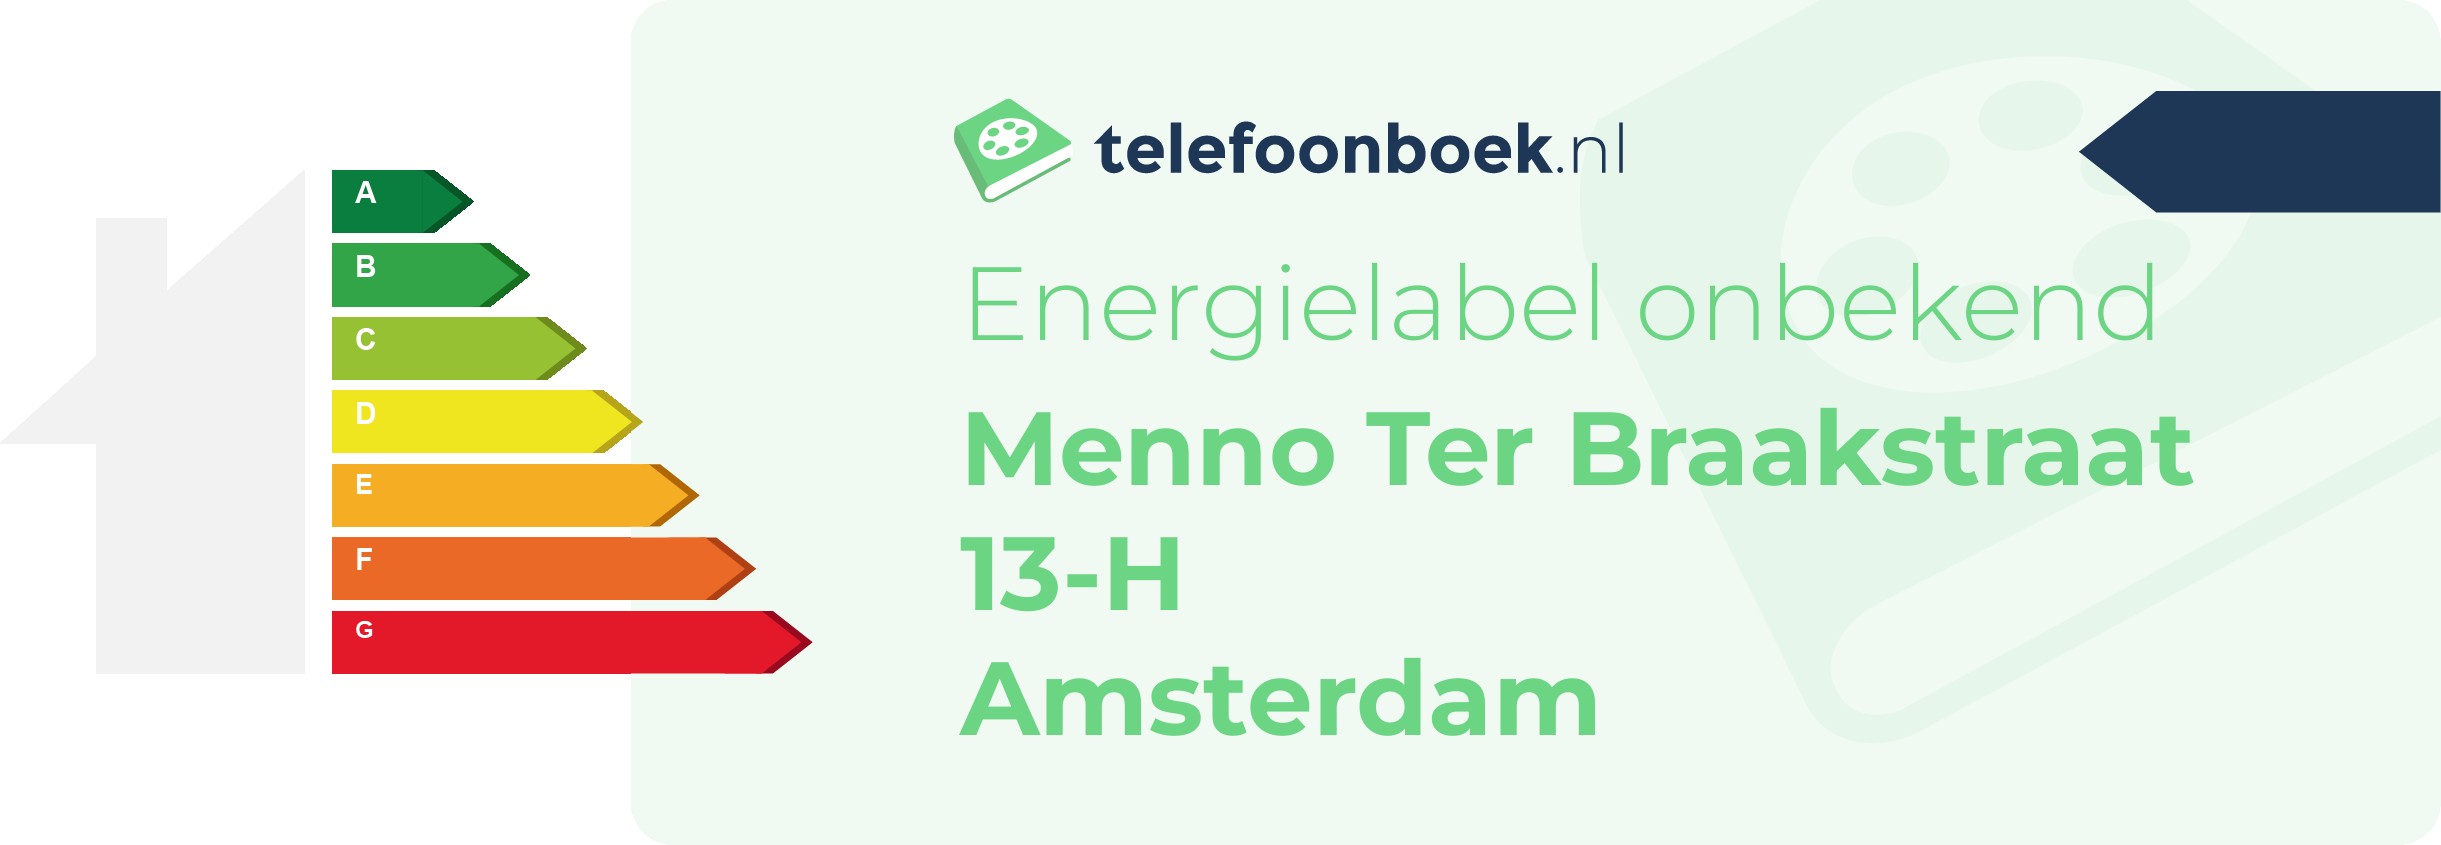 Energielabel Menno Ter Braakstraat 13-H Amsterdam